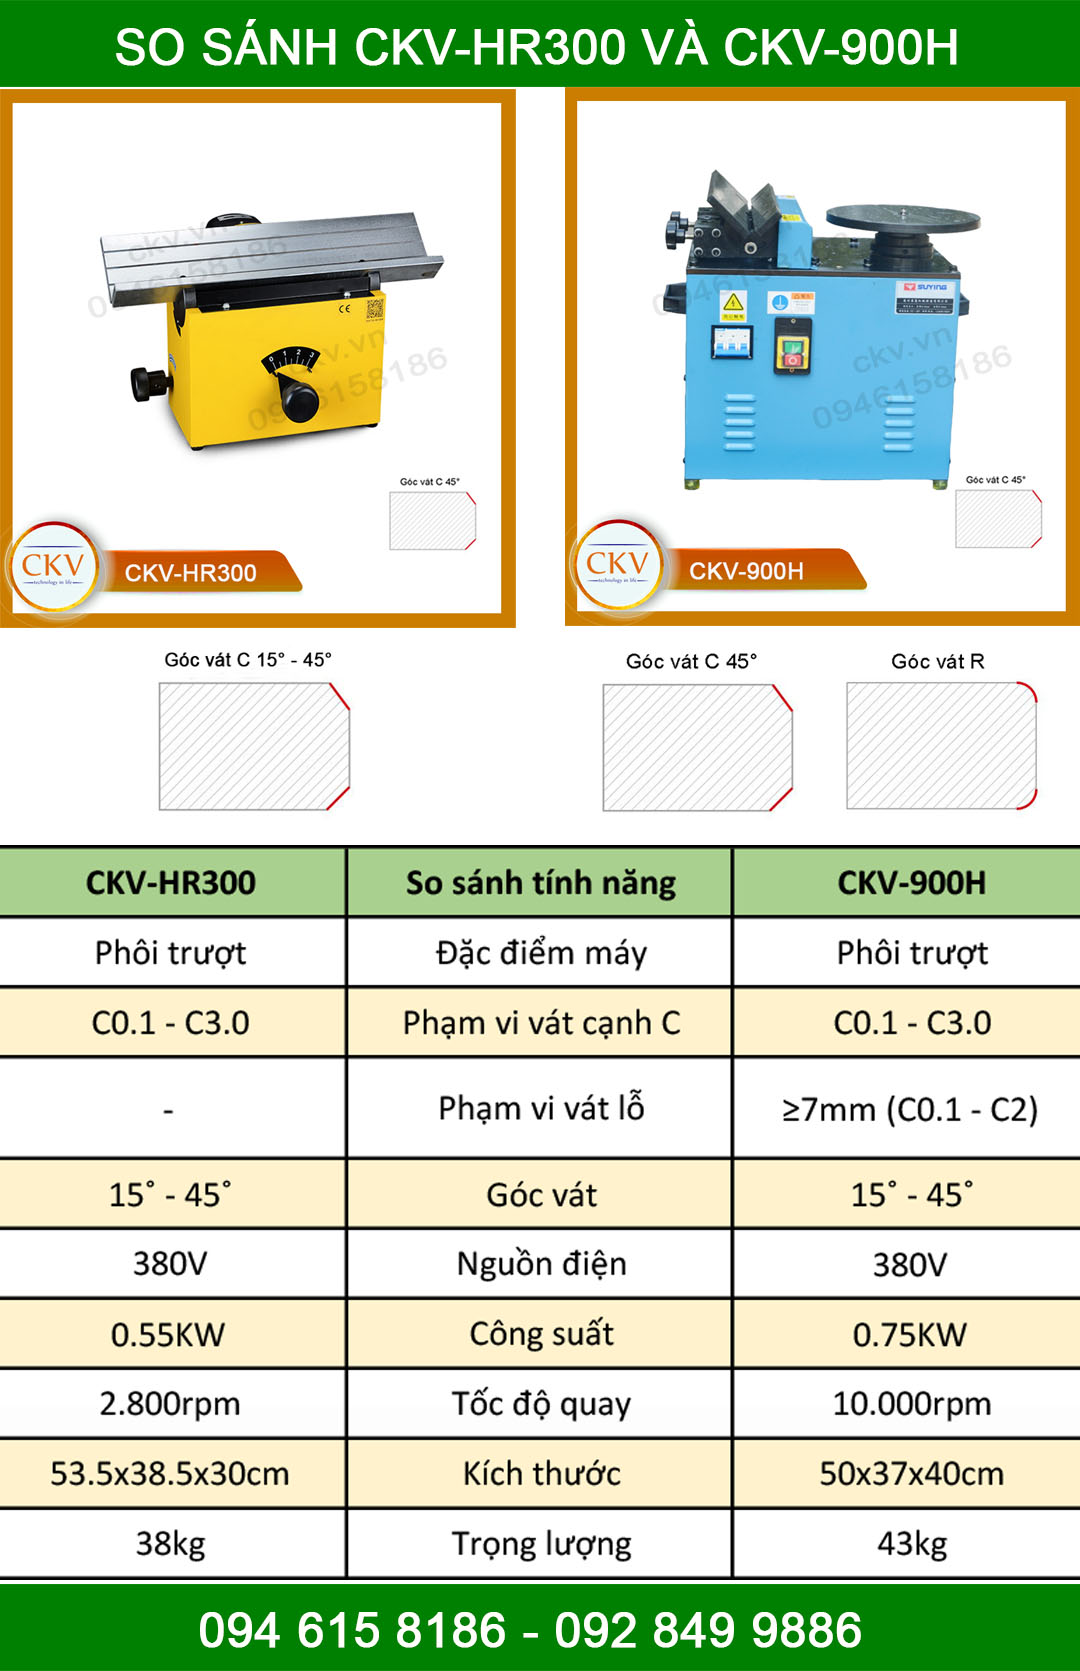 So sánh CKV-HR300 với CKV-900H